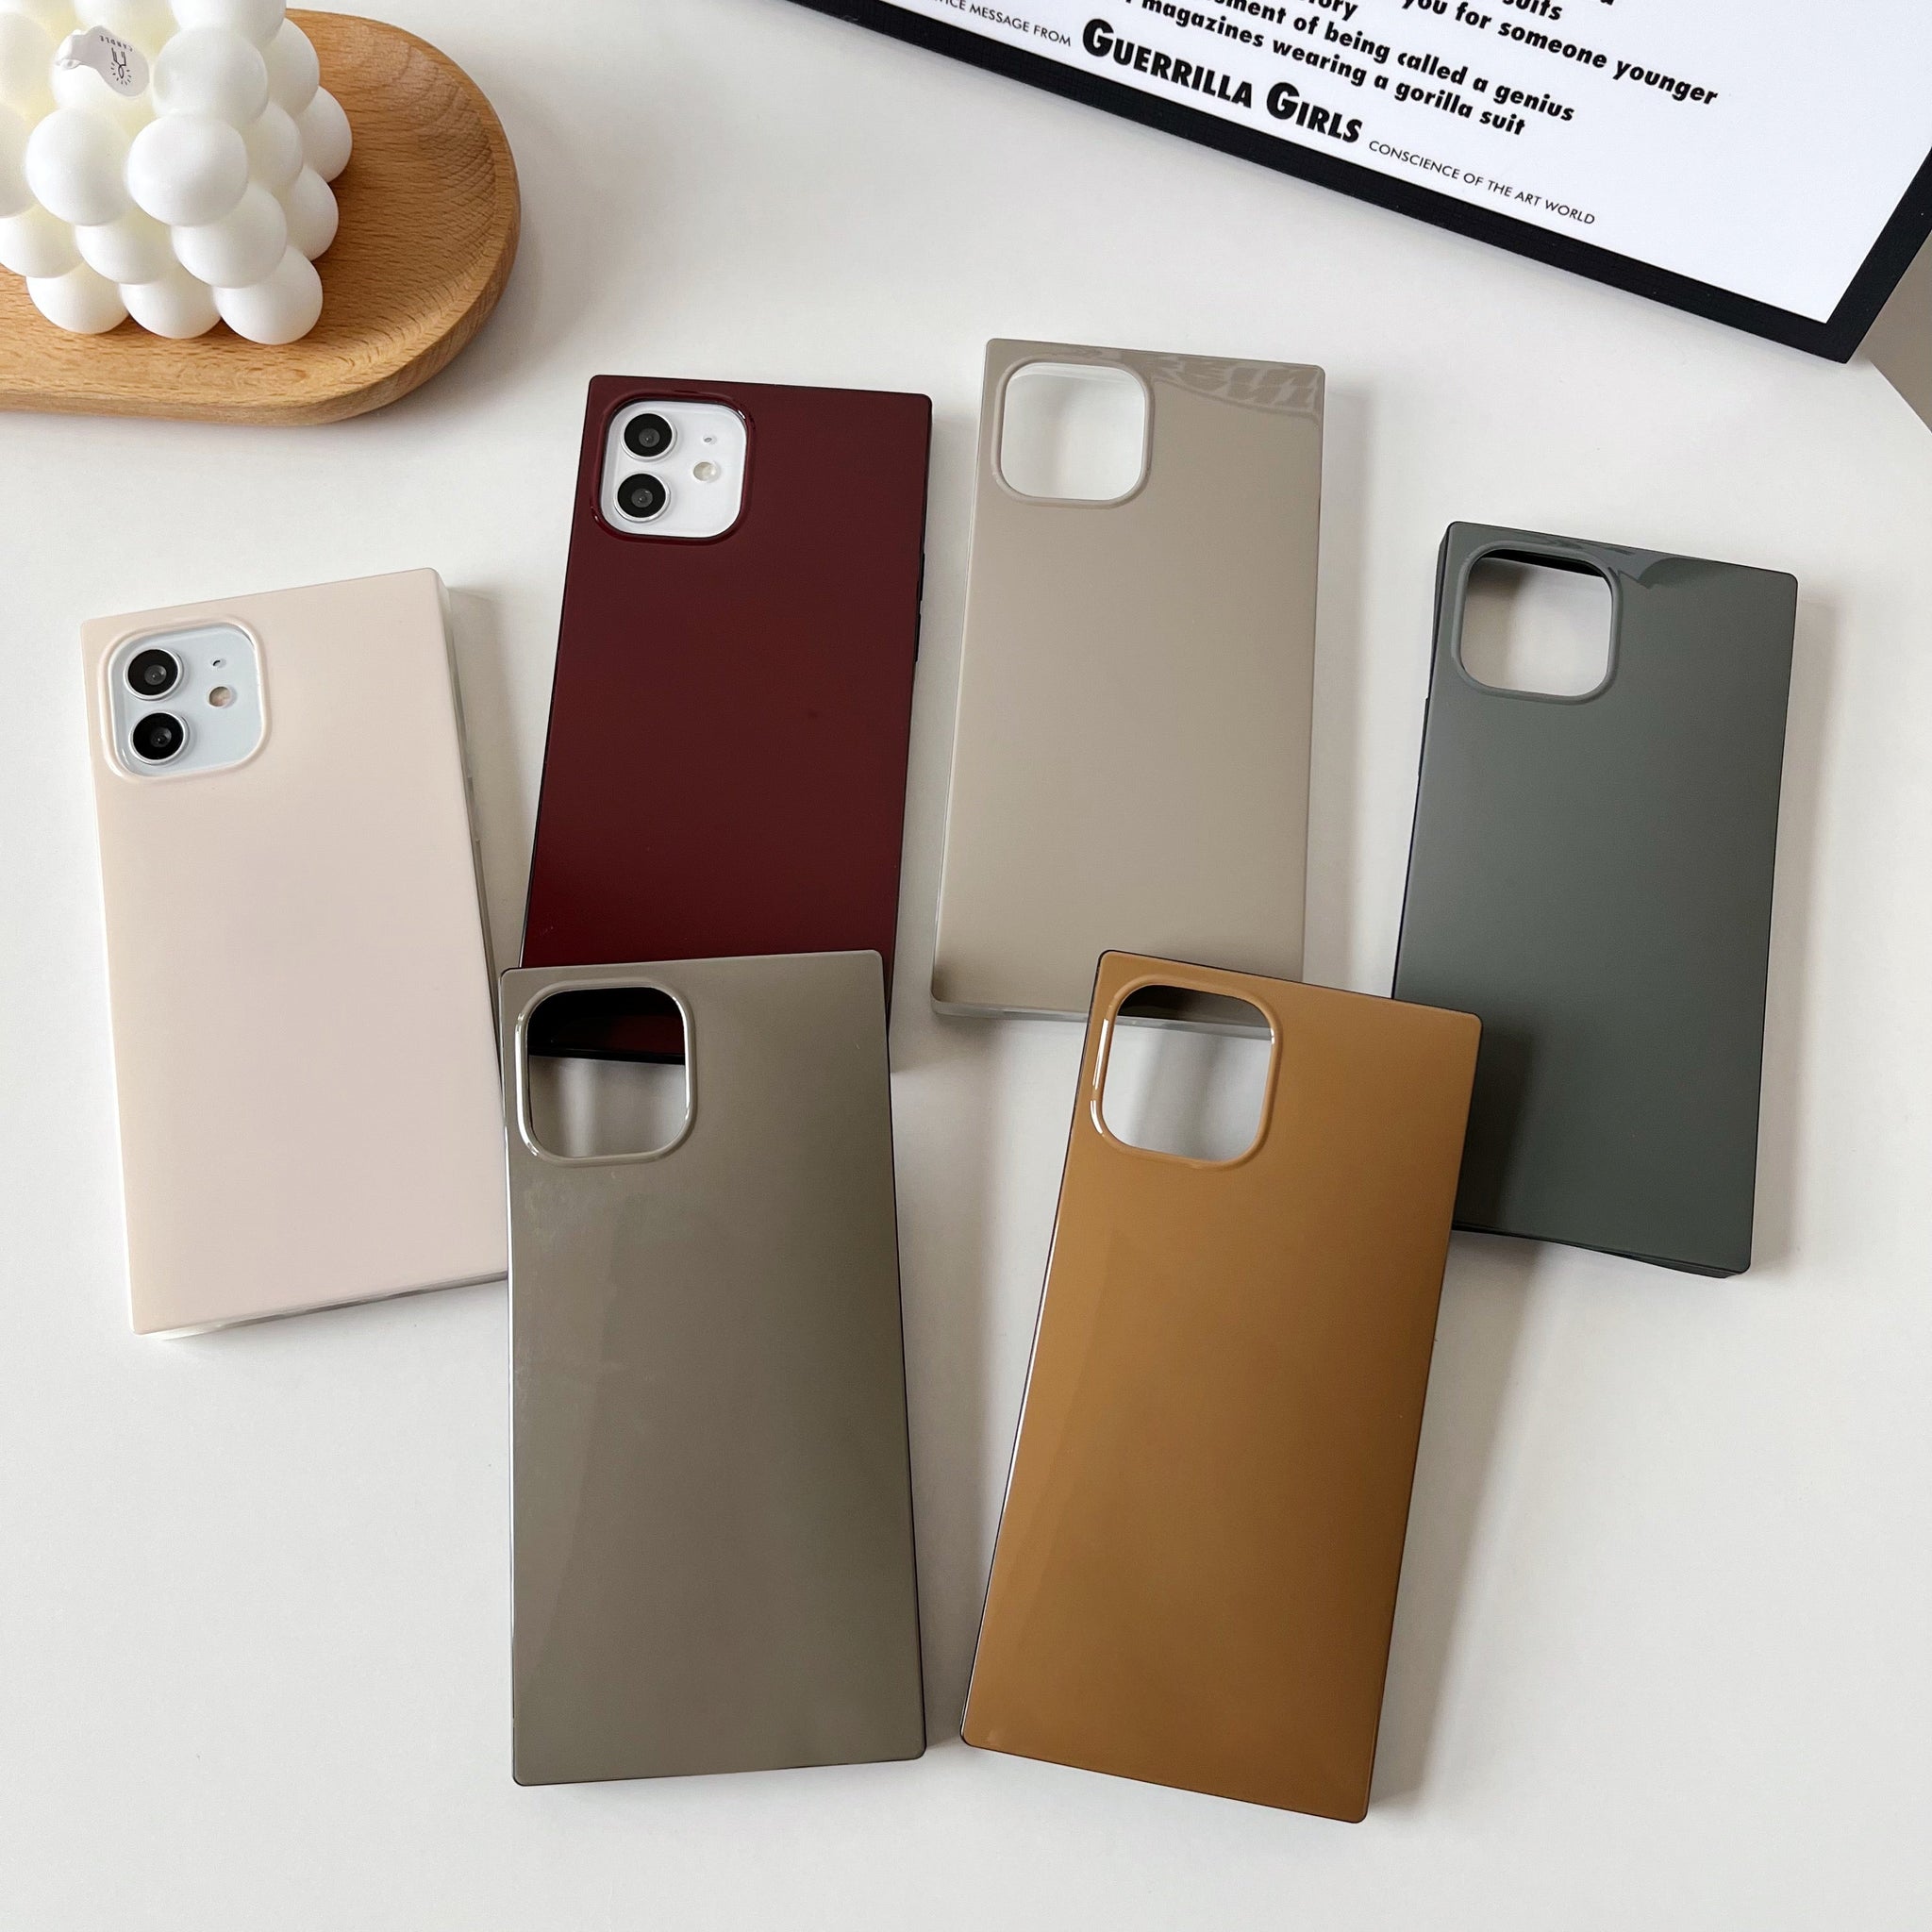 iPhone 13 Pro Case Square Neutral Plain Color (Golden Brown)